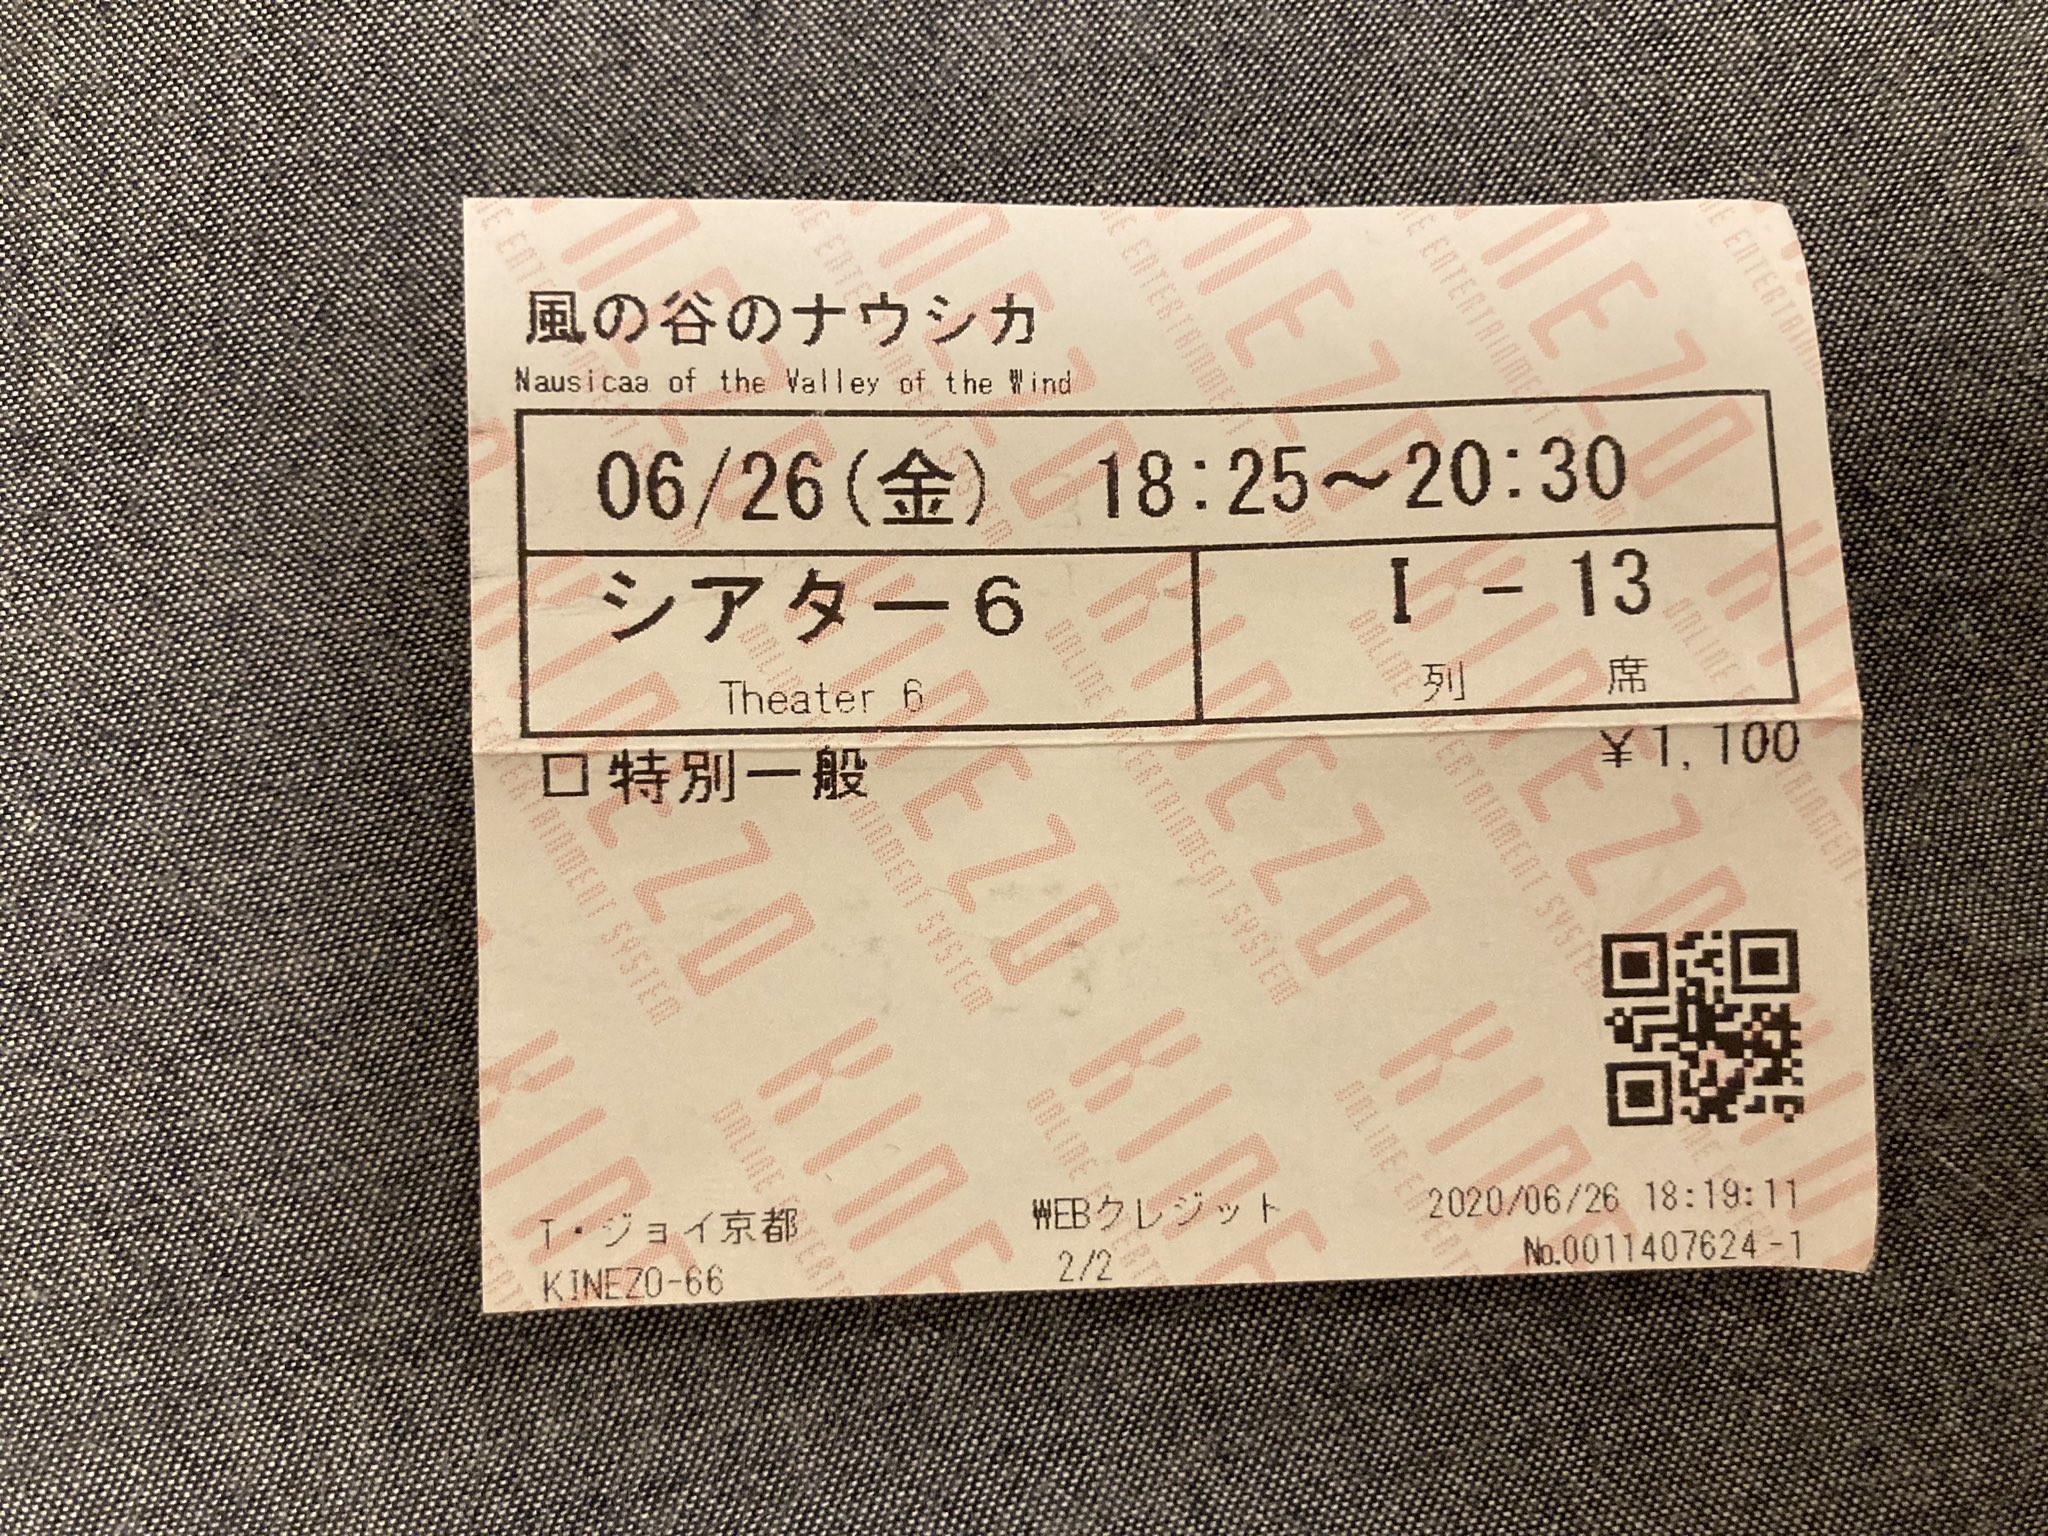 ふとん 京都駅近くの映画館で見たんだけど 風の谷のナウシカの映画チケットってエモすぎて普段捨ててるチケット勿体なく思えてしまう T Co Uayubx1o9s Twitter